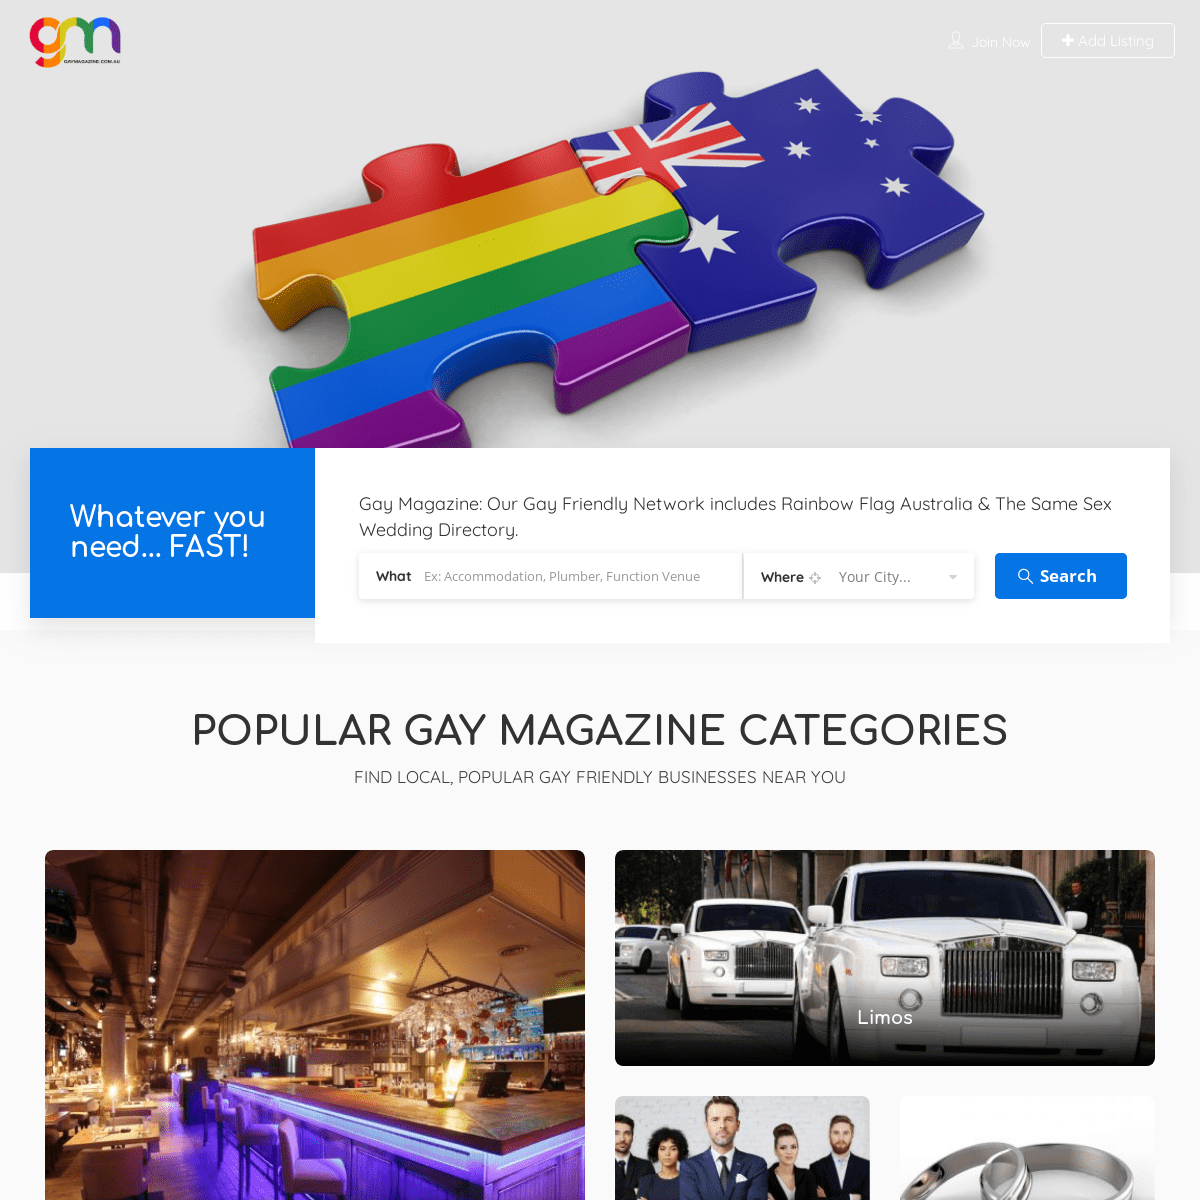 A complete backup of gaymagazine.com.au